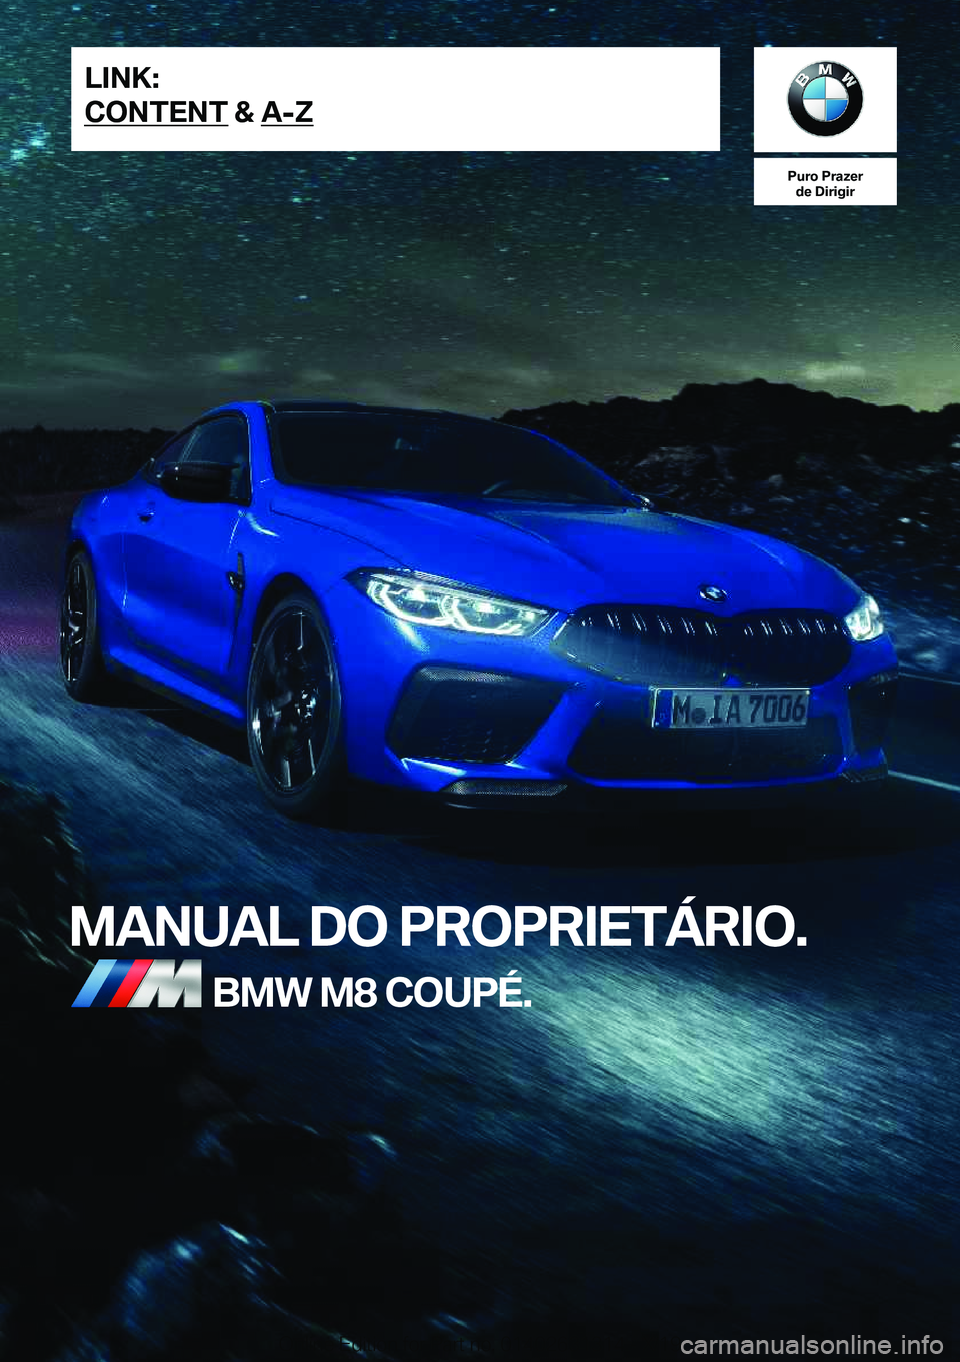 BMW M8 2020  Manual do condutor (in Portuguese) �P�u�r�o��P�r�a�z�e�r�d�e��D�i�r�i�g�i�r
�M�A�N�U�A�L��D�O��P�R�O�P�R�I�E�T�Á�R�I�O�.�B�M�W��M�8��C�O�U�P�